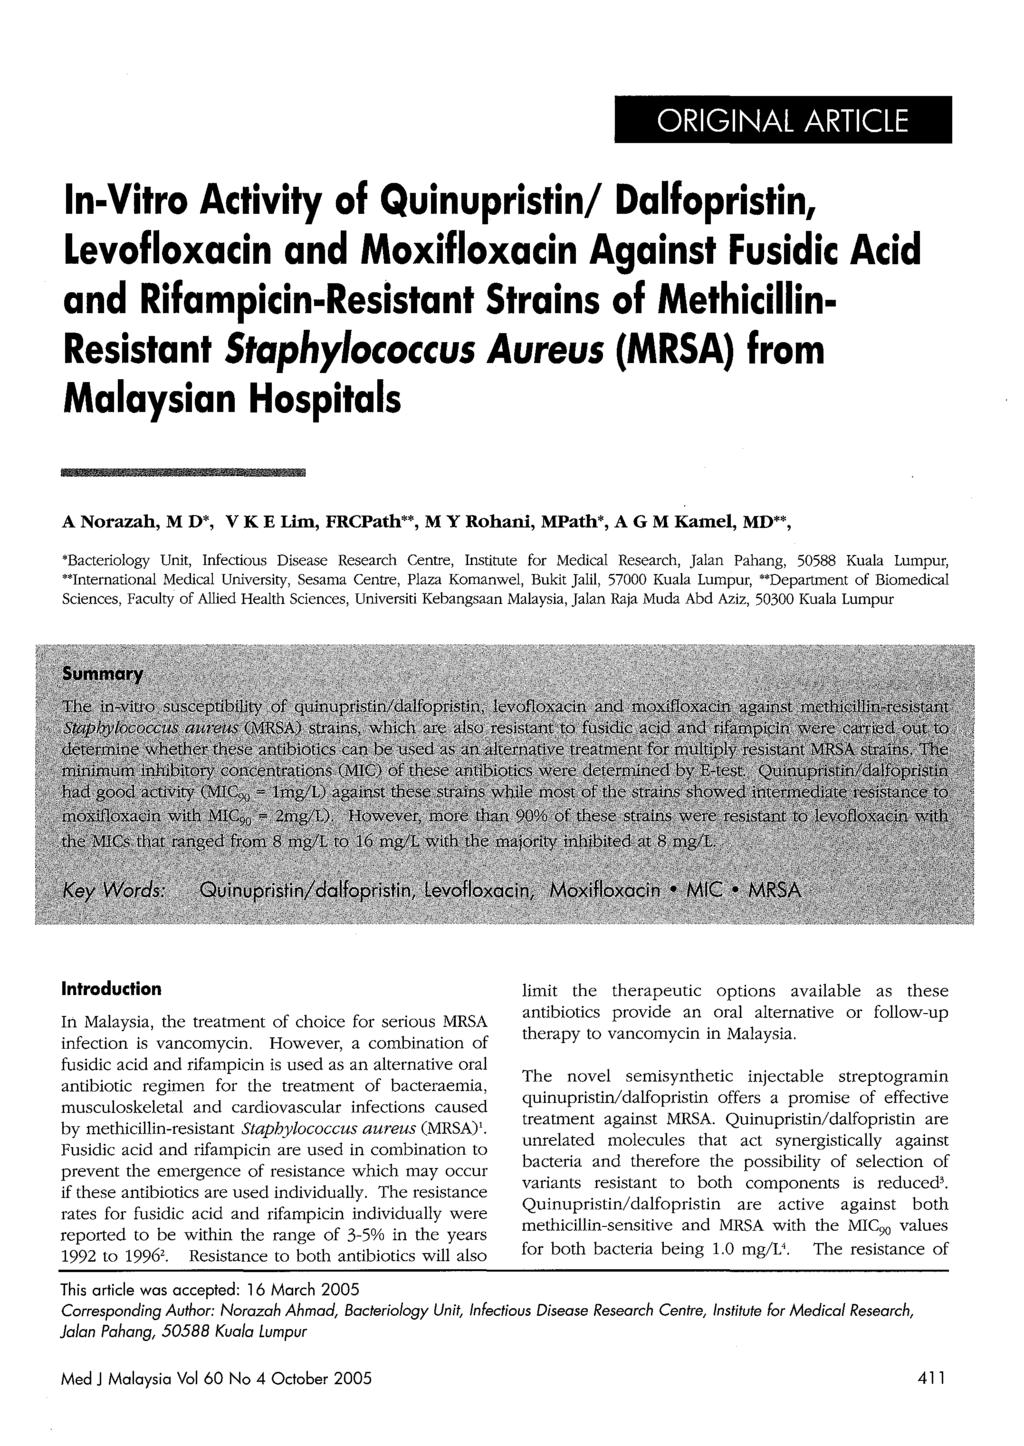 I ORIGINAL ARTICLE In-Vitro Activity of Quinupristin/ Dalfopristin, Levofloxacin and Moxifloxacin Against Fusidic Acid and Rifampicin-Resistant Strains of Methicillin Resistant Staphylococcus Aureus